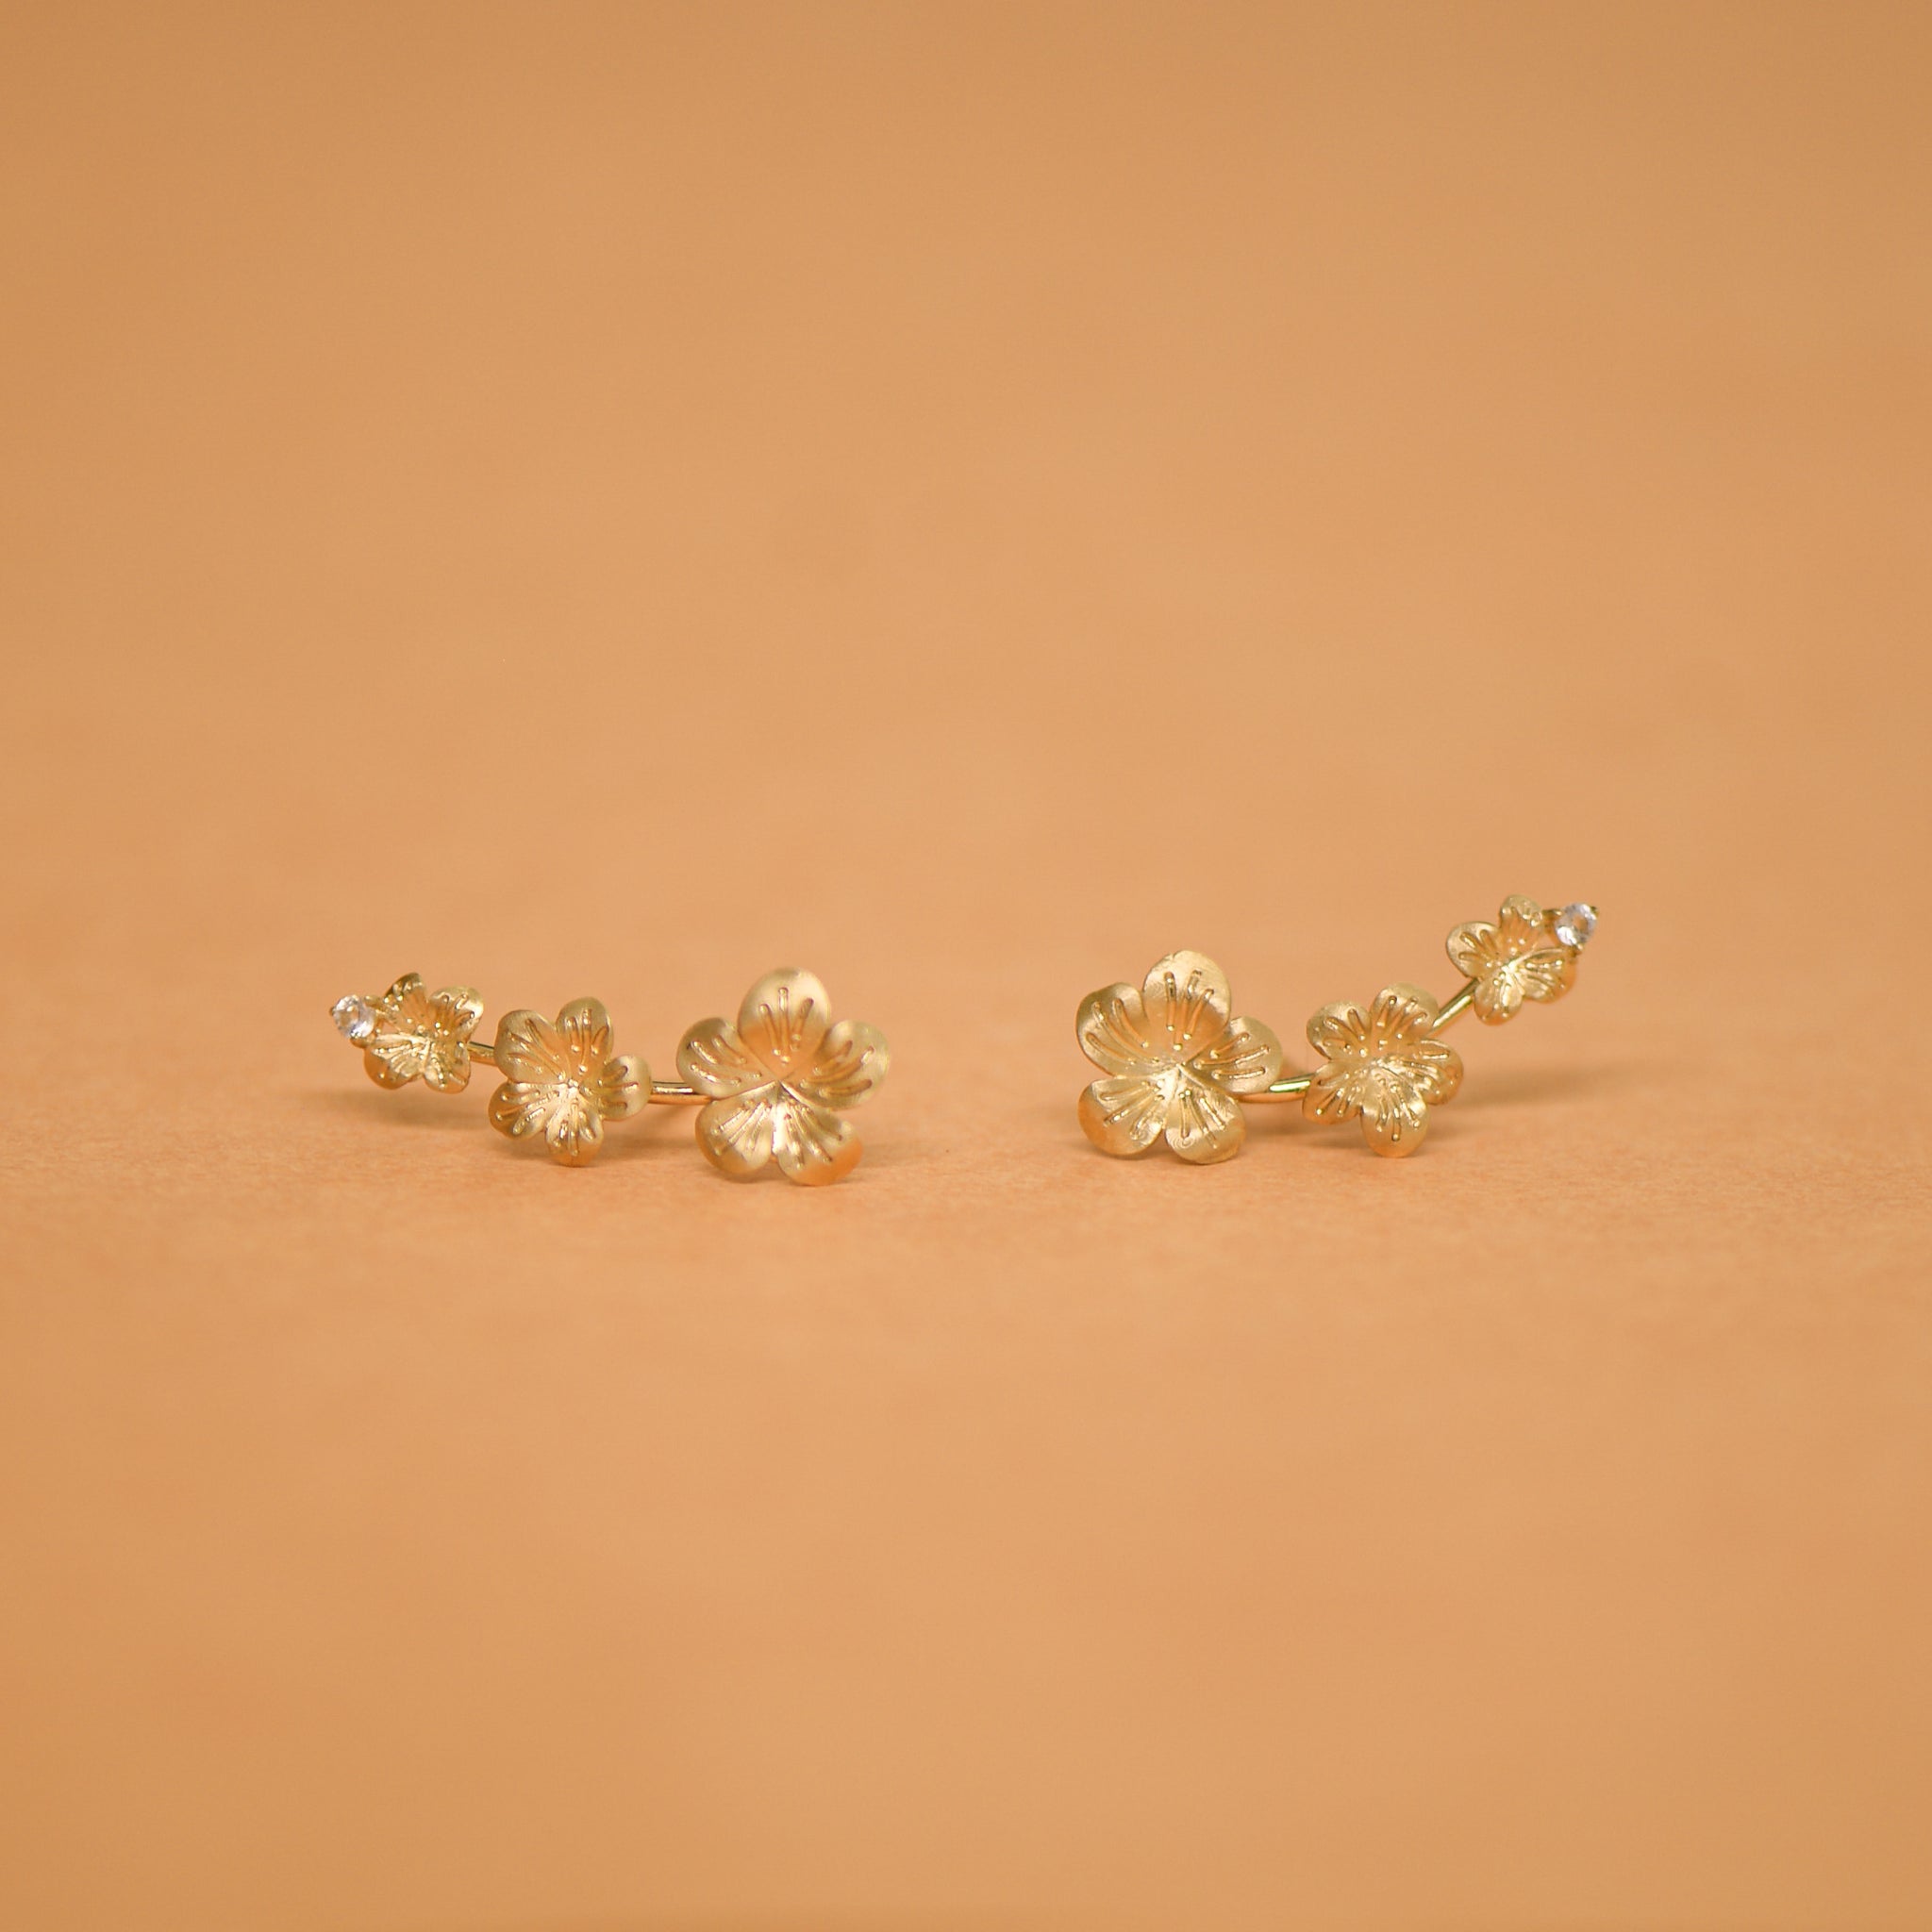 Brinco Ear Cuff de Ouro Amarelo Flores com Diamantes